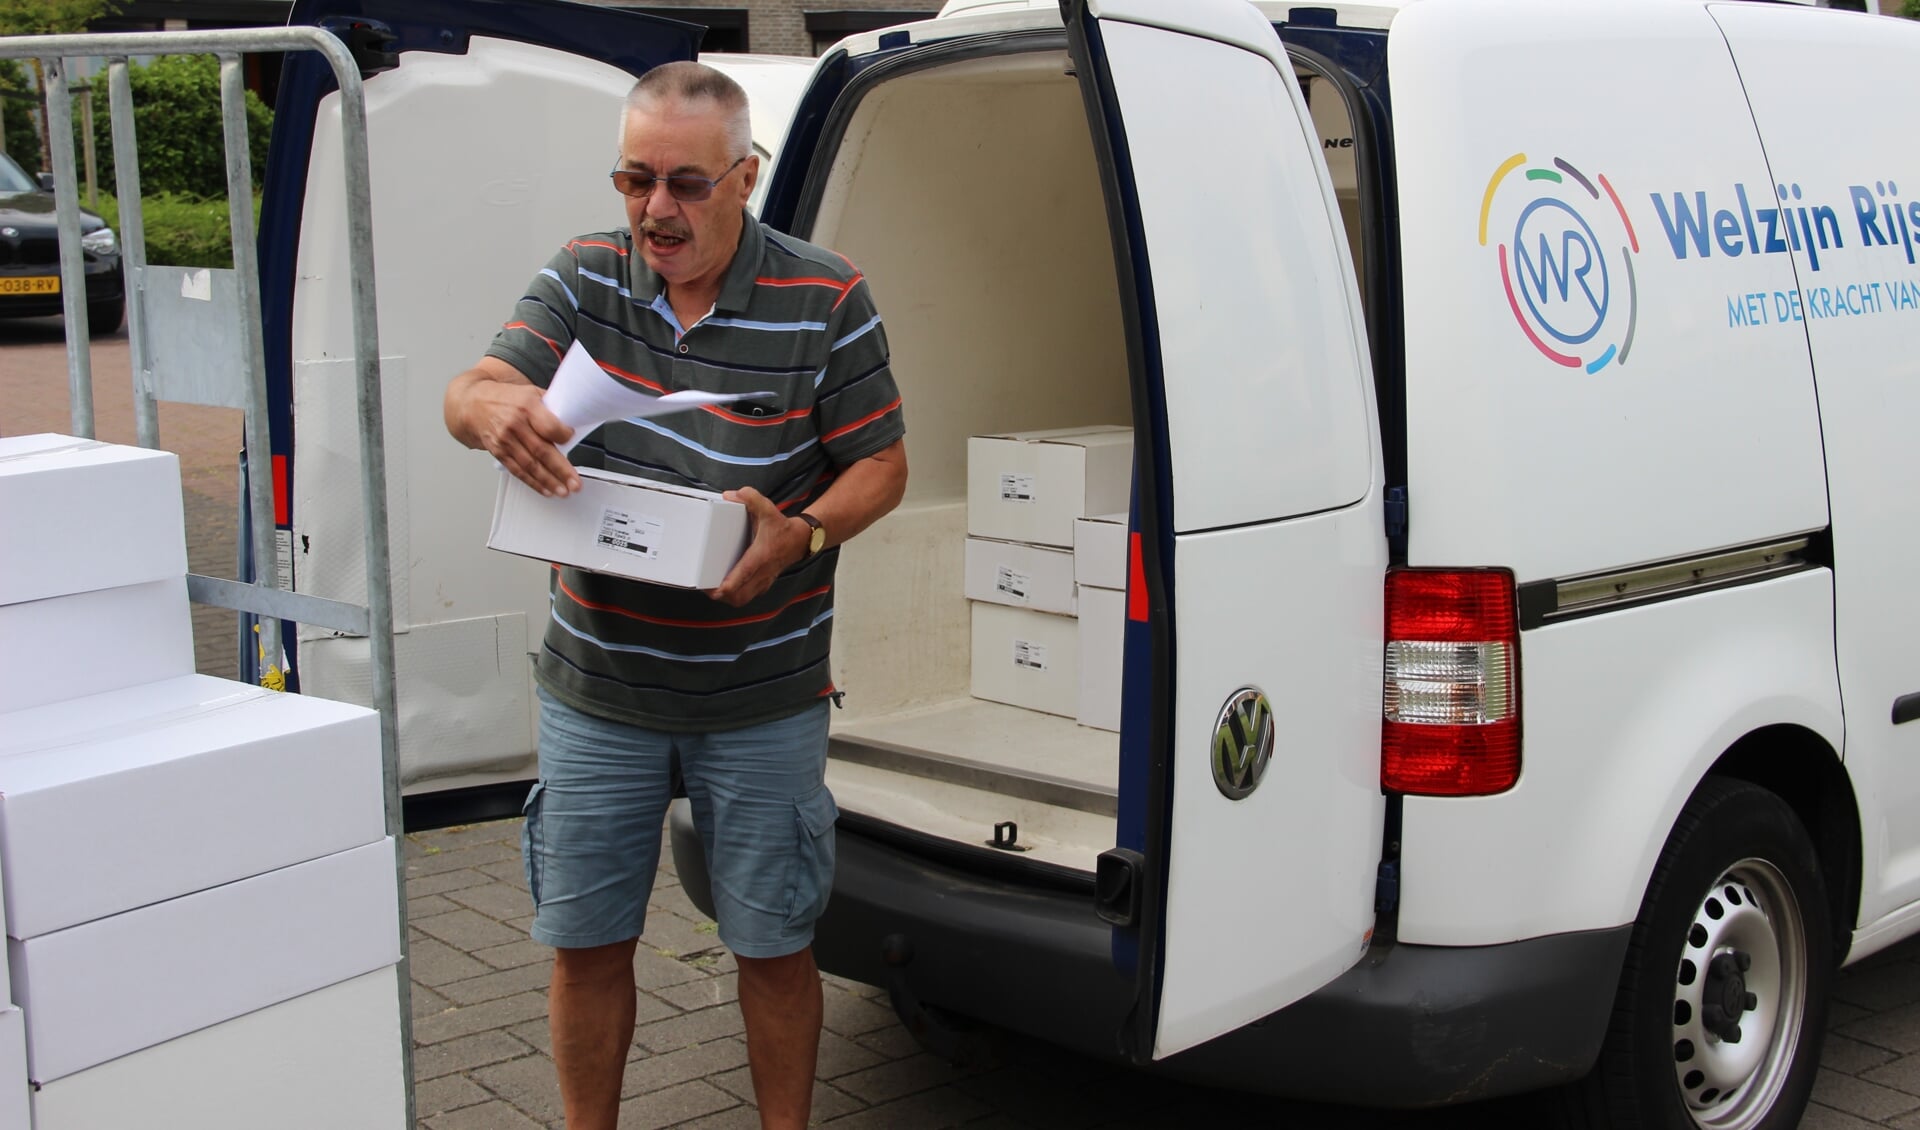 Vrijwilliger Simon zet zich al jaren in voor de maaltijdenbezorging van Welzijn Rijswijk.